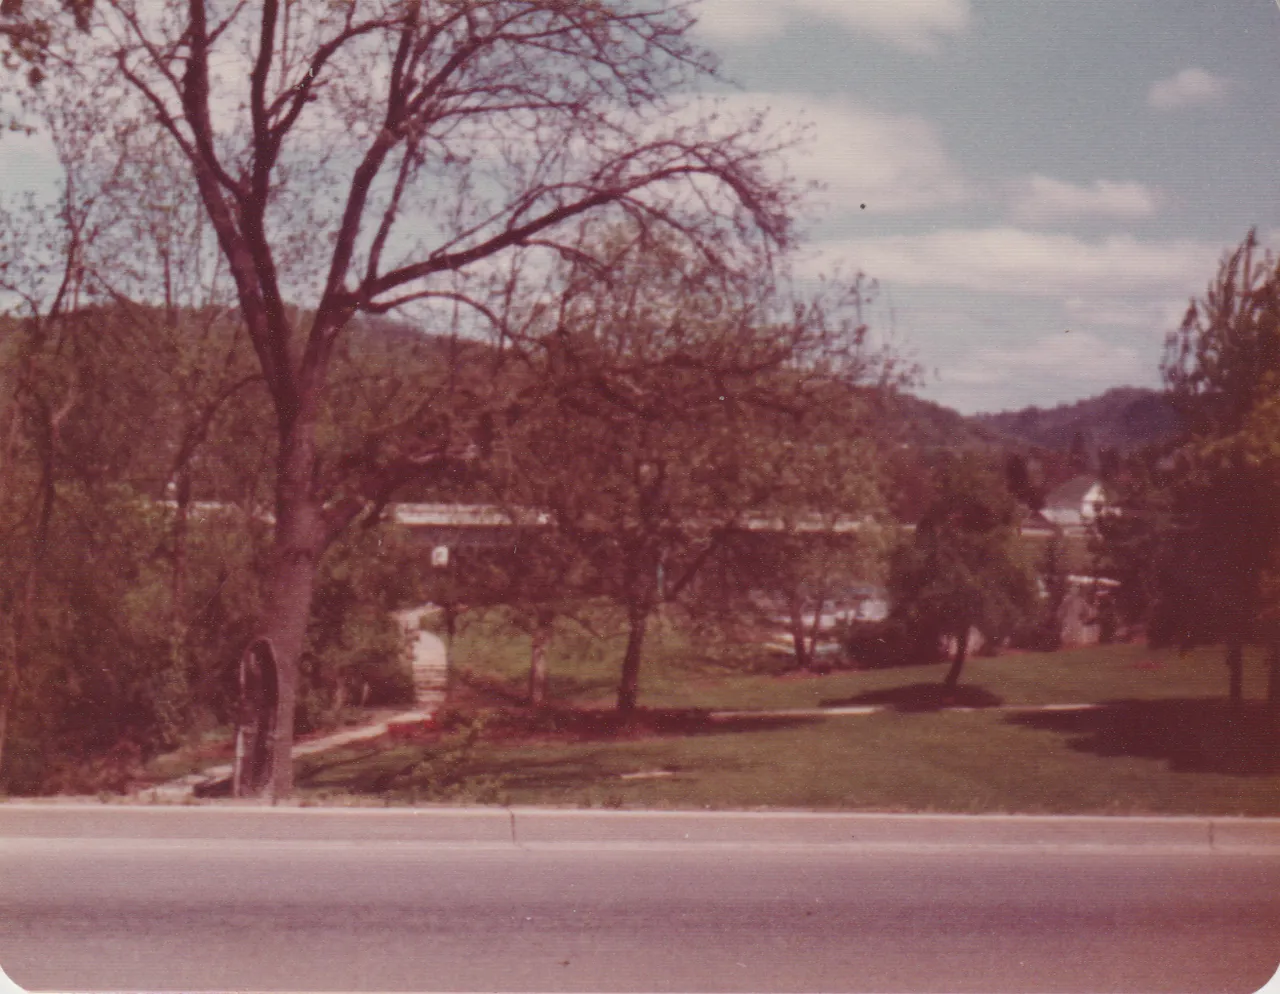 1975-06 - Orange Tint - Octagon Shape - roads, trees, bridges, car, flowers, sink, etc, but not sure when or where, 6pics-4.png